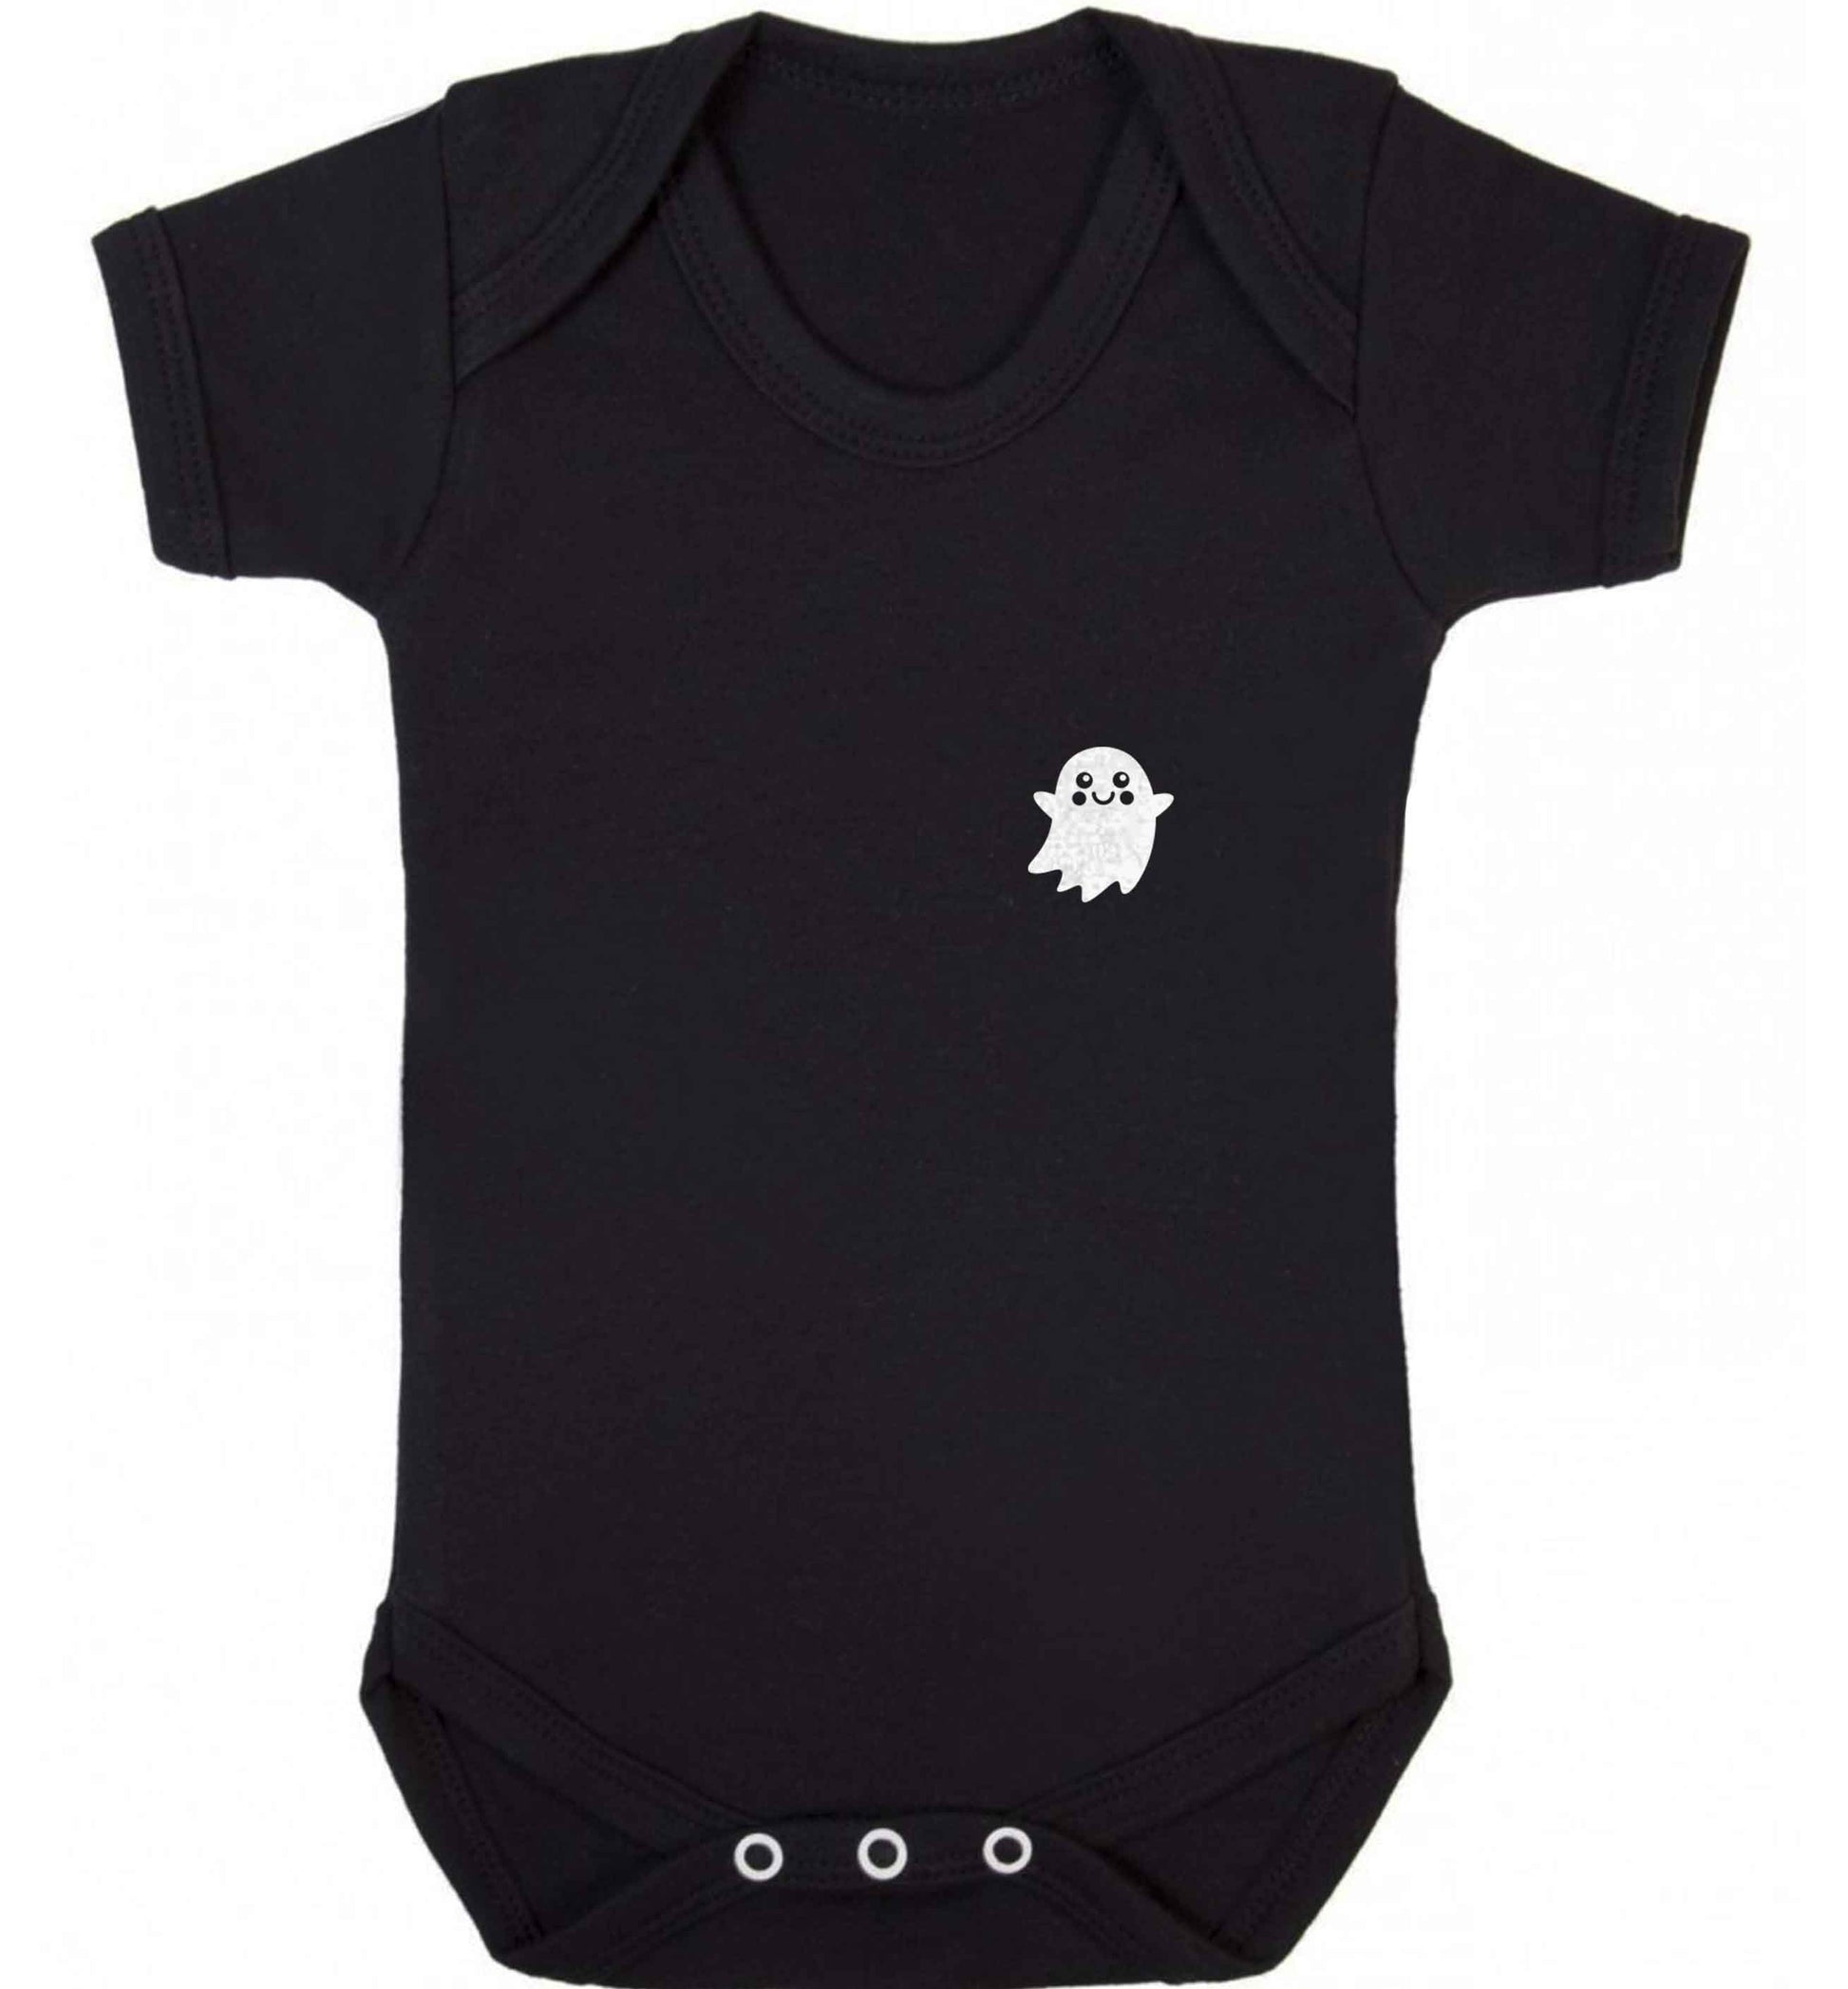 Pocket ghost baby vest black 18-24 months